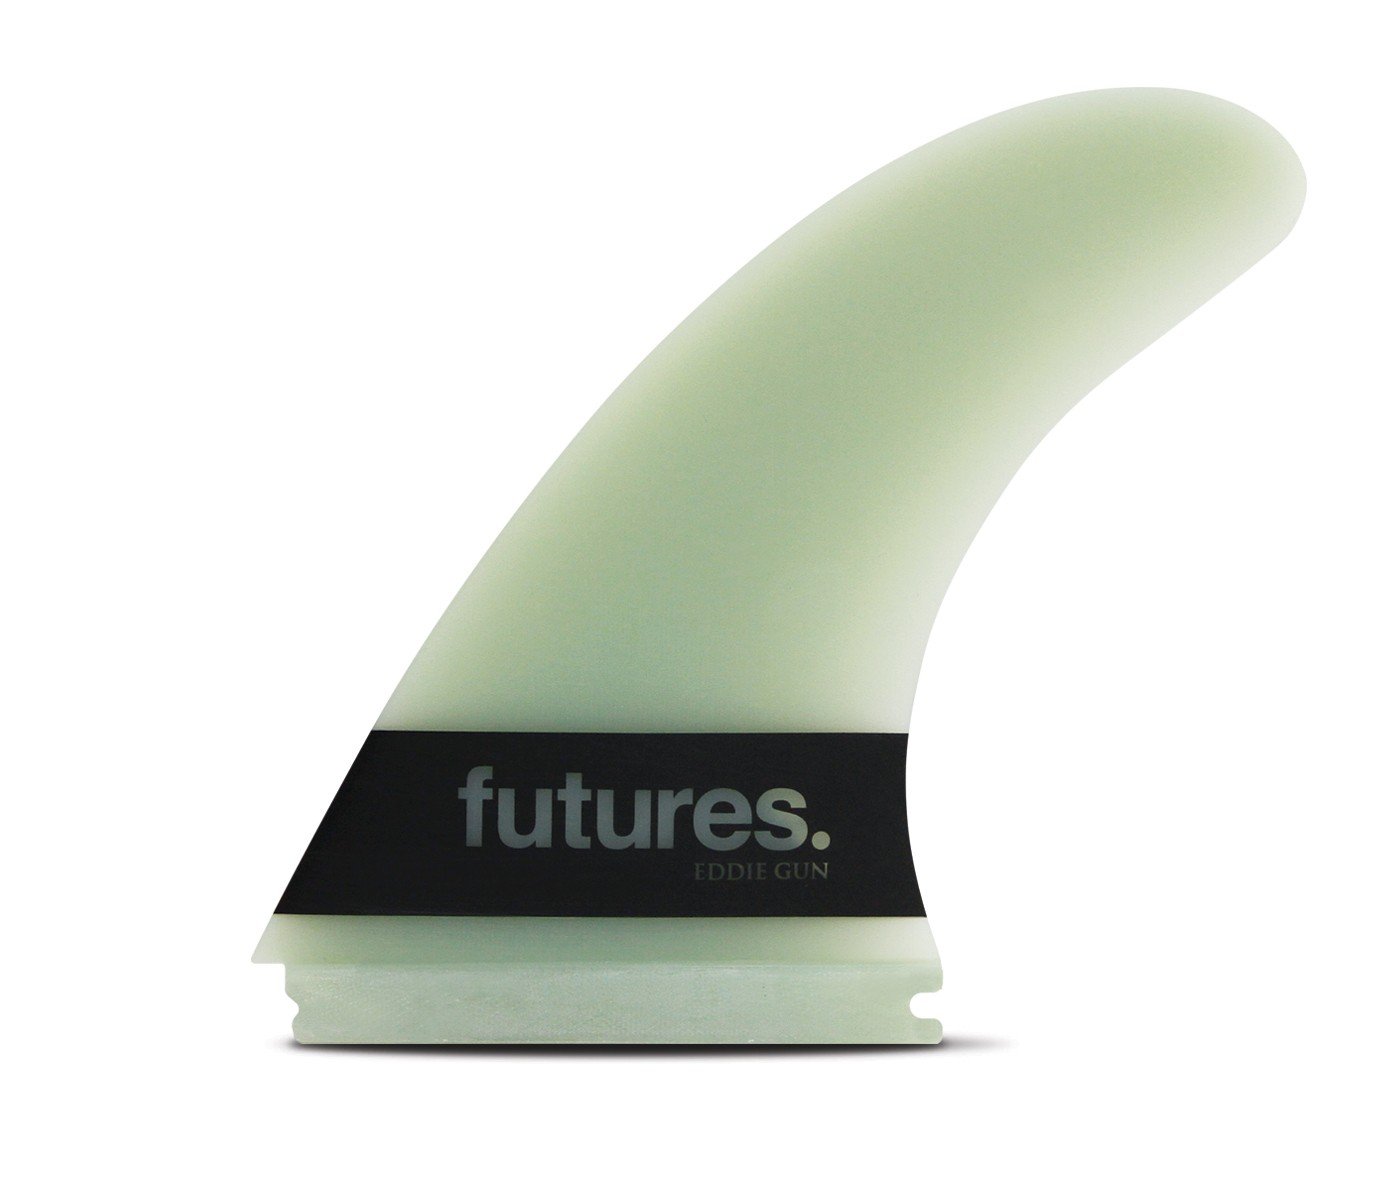 Futures Eddie Gun G10 - Board Store FuturesFins  